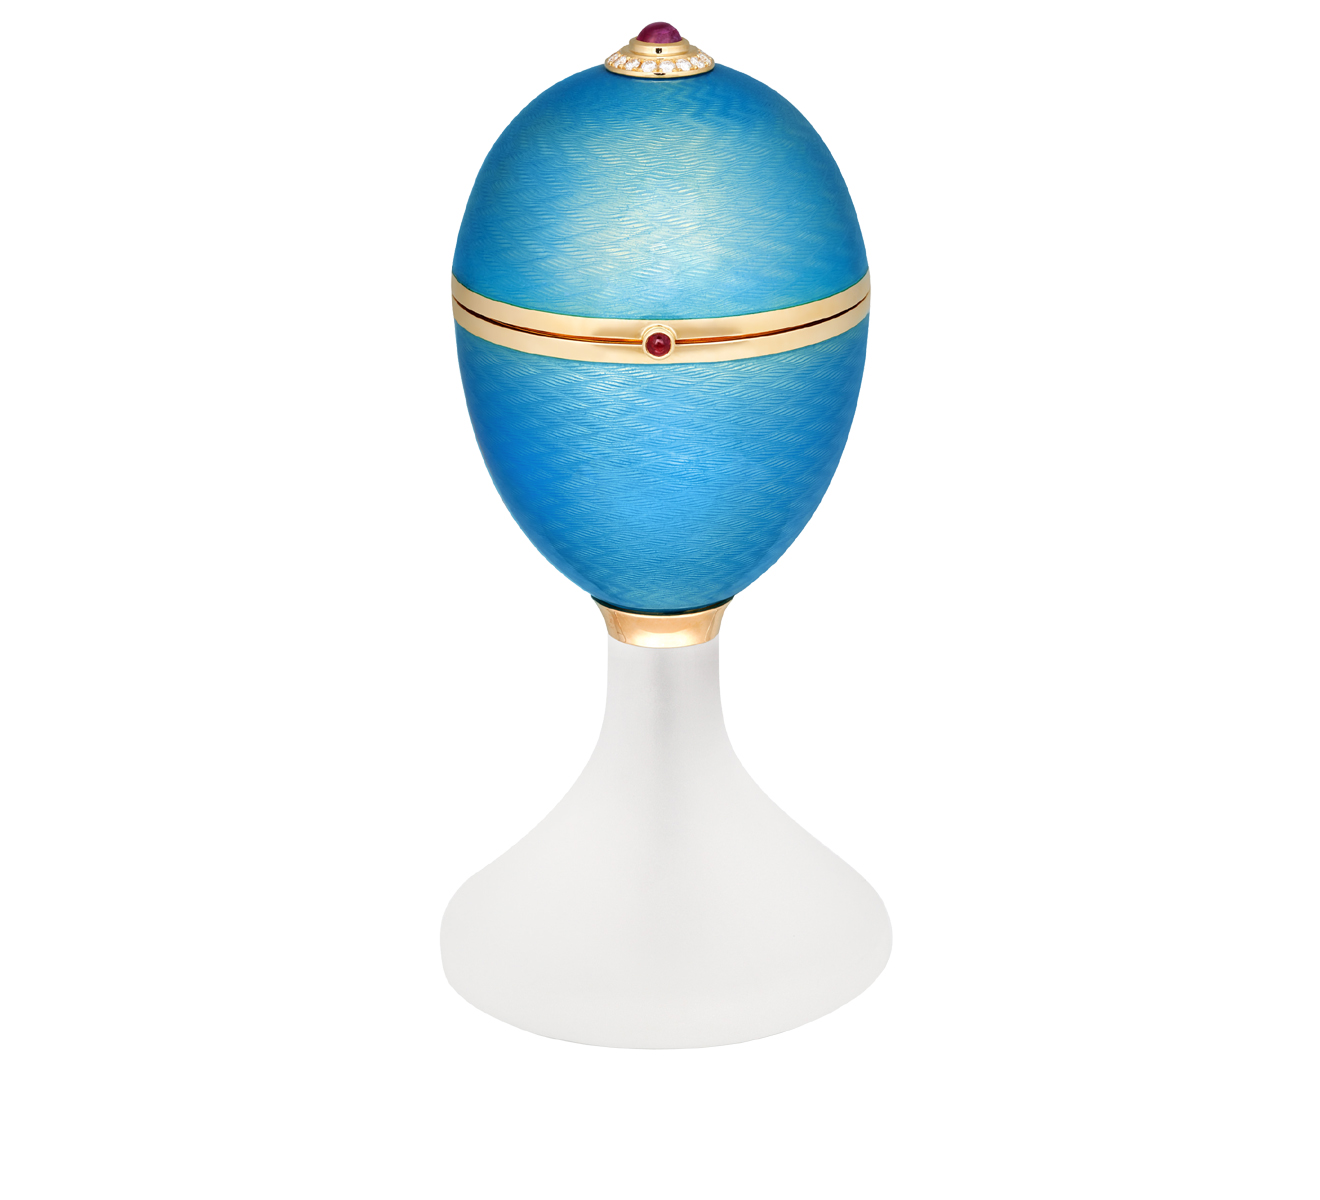 Подарочное яйцо Mercury Enamel PL333/OT/02/00/102 - фото 1 – Mercury